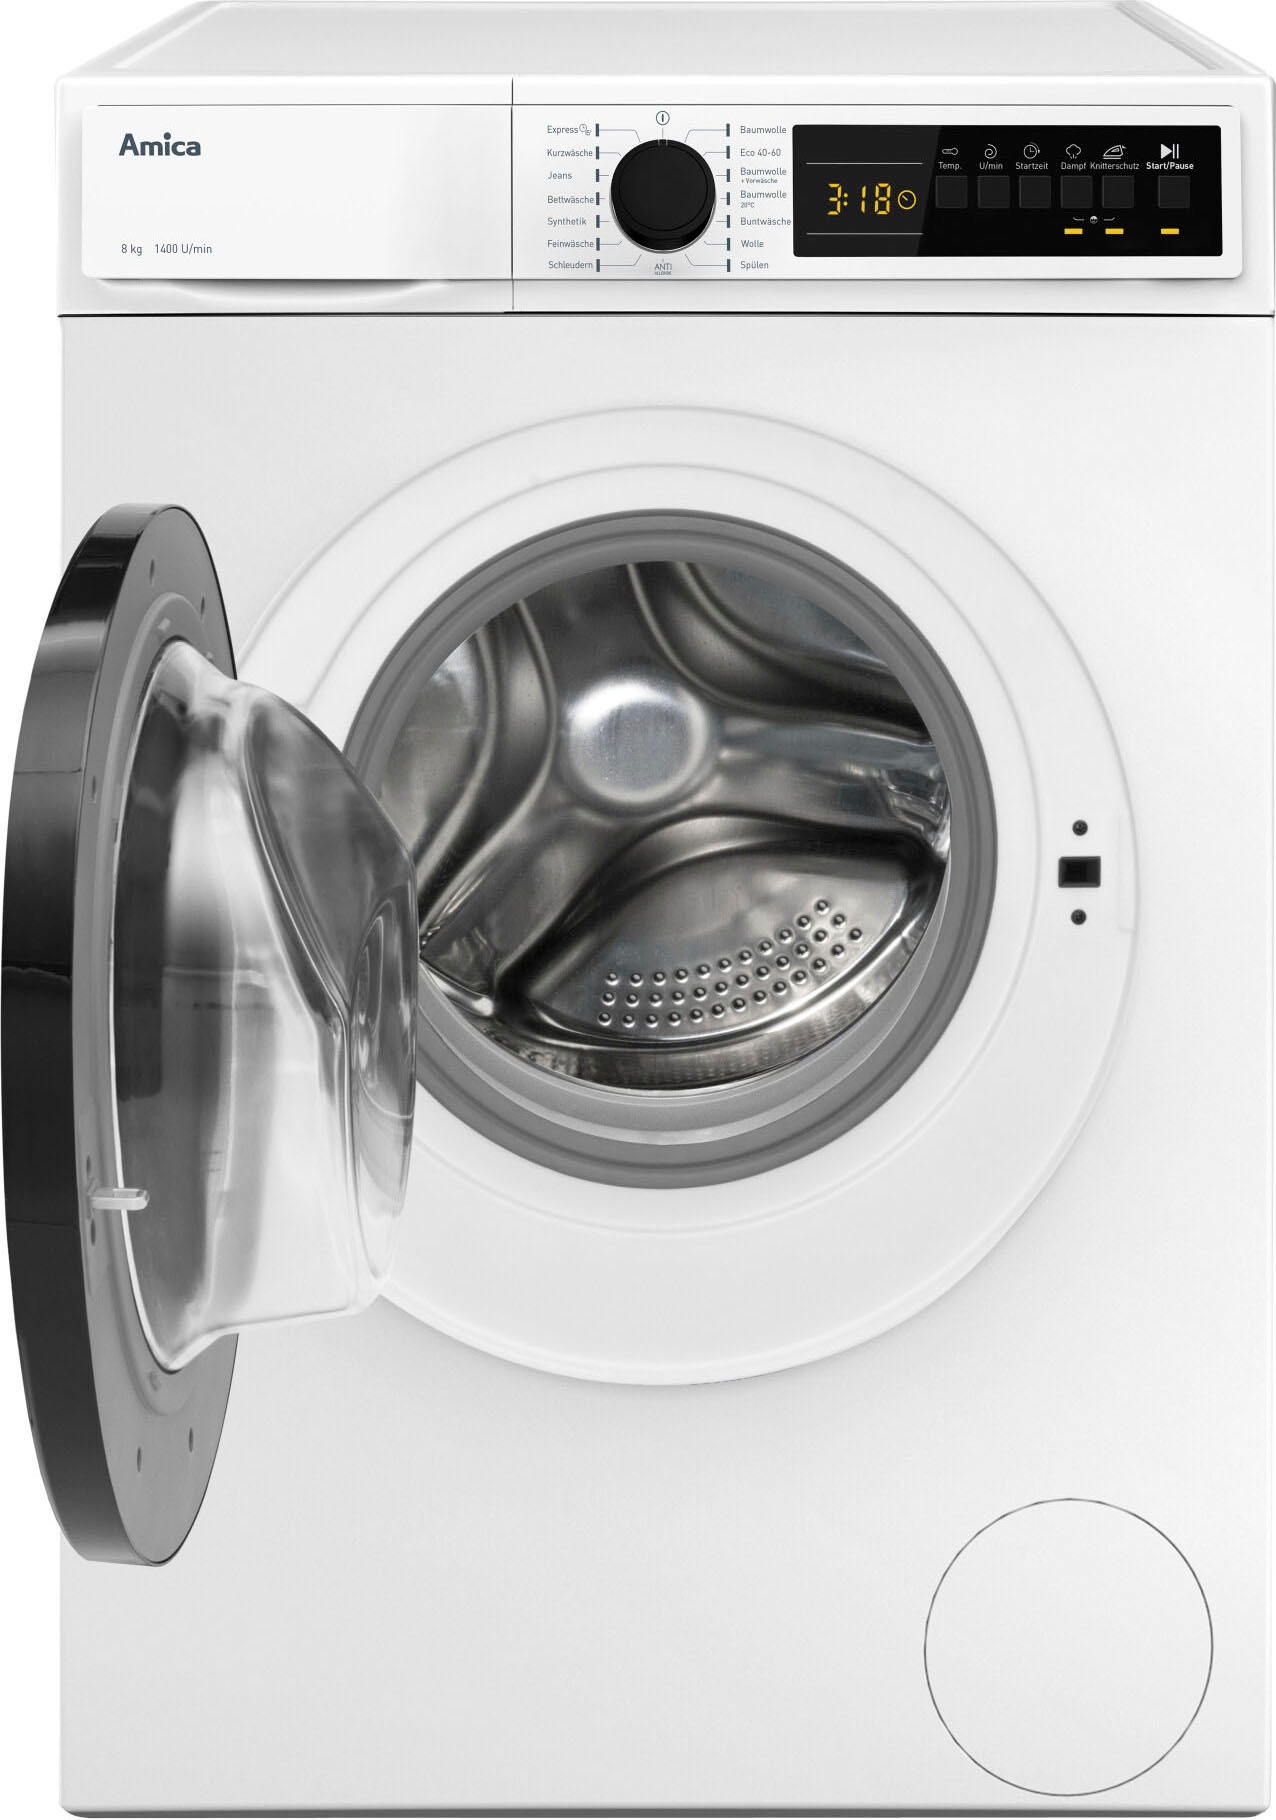 Amica Waschmaschine 1400 WA U/min 3 kg, mit 081«, 484 XXL 8 Jahren »WA 081, 484 Garantie